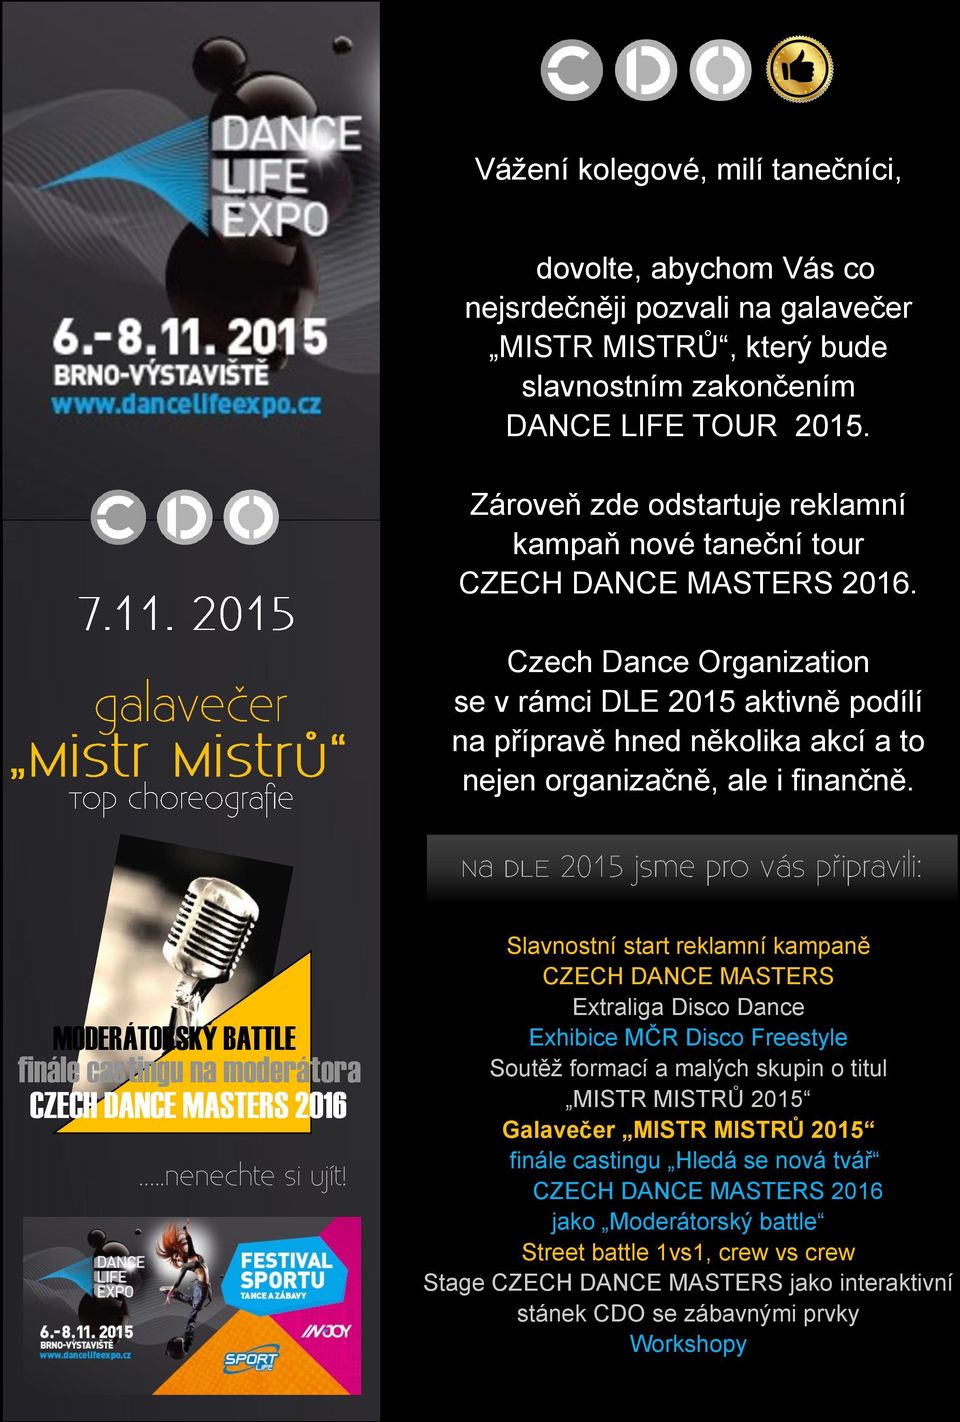 Czech Dance Organization se v rámci DLE 2015 aktivně podílí na přípravě hned několika akcí a to nejen organizačně, ale i finančně.